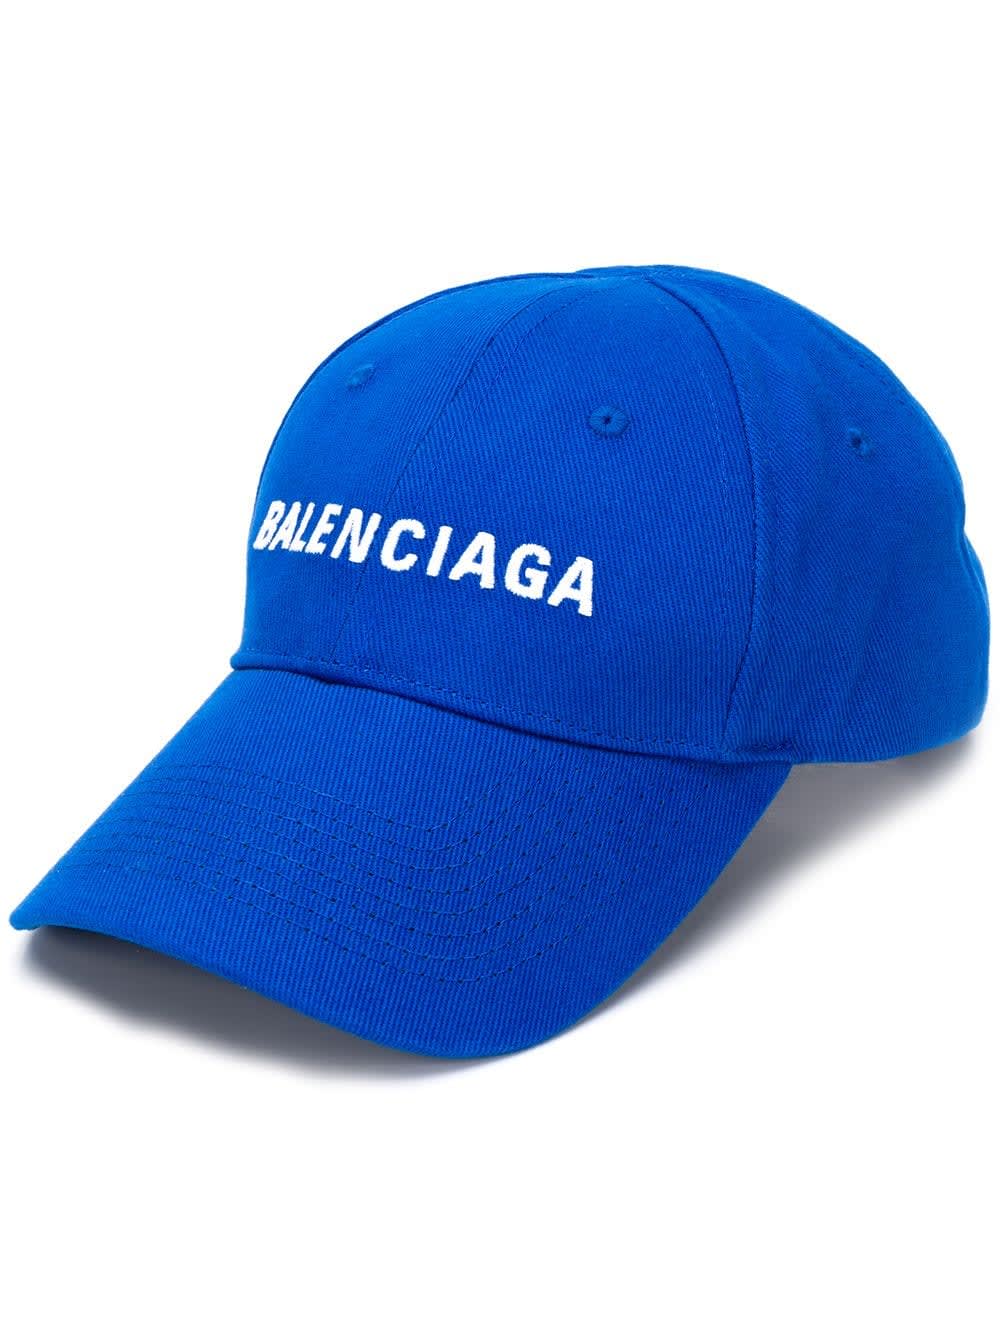 BALENCIAGA EMBROIDERED LOGO CAP,11240398